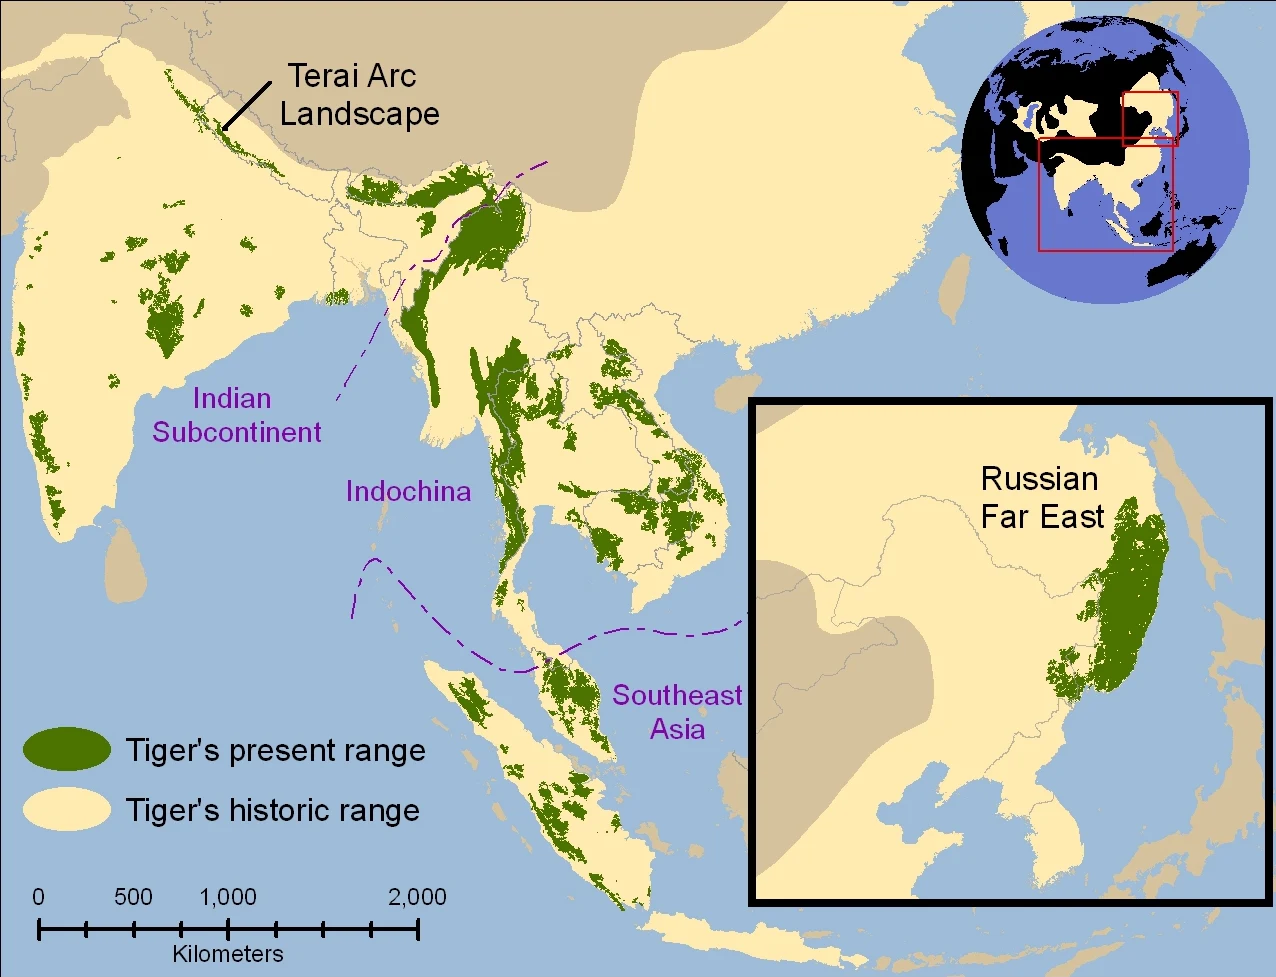 Historical range of tiger (1850) vs the current range (2006) of tiger